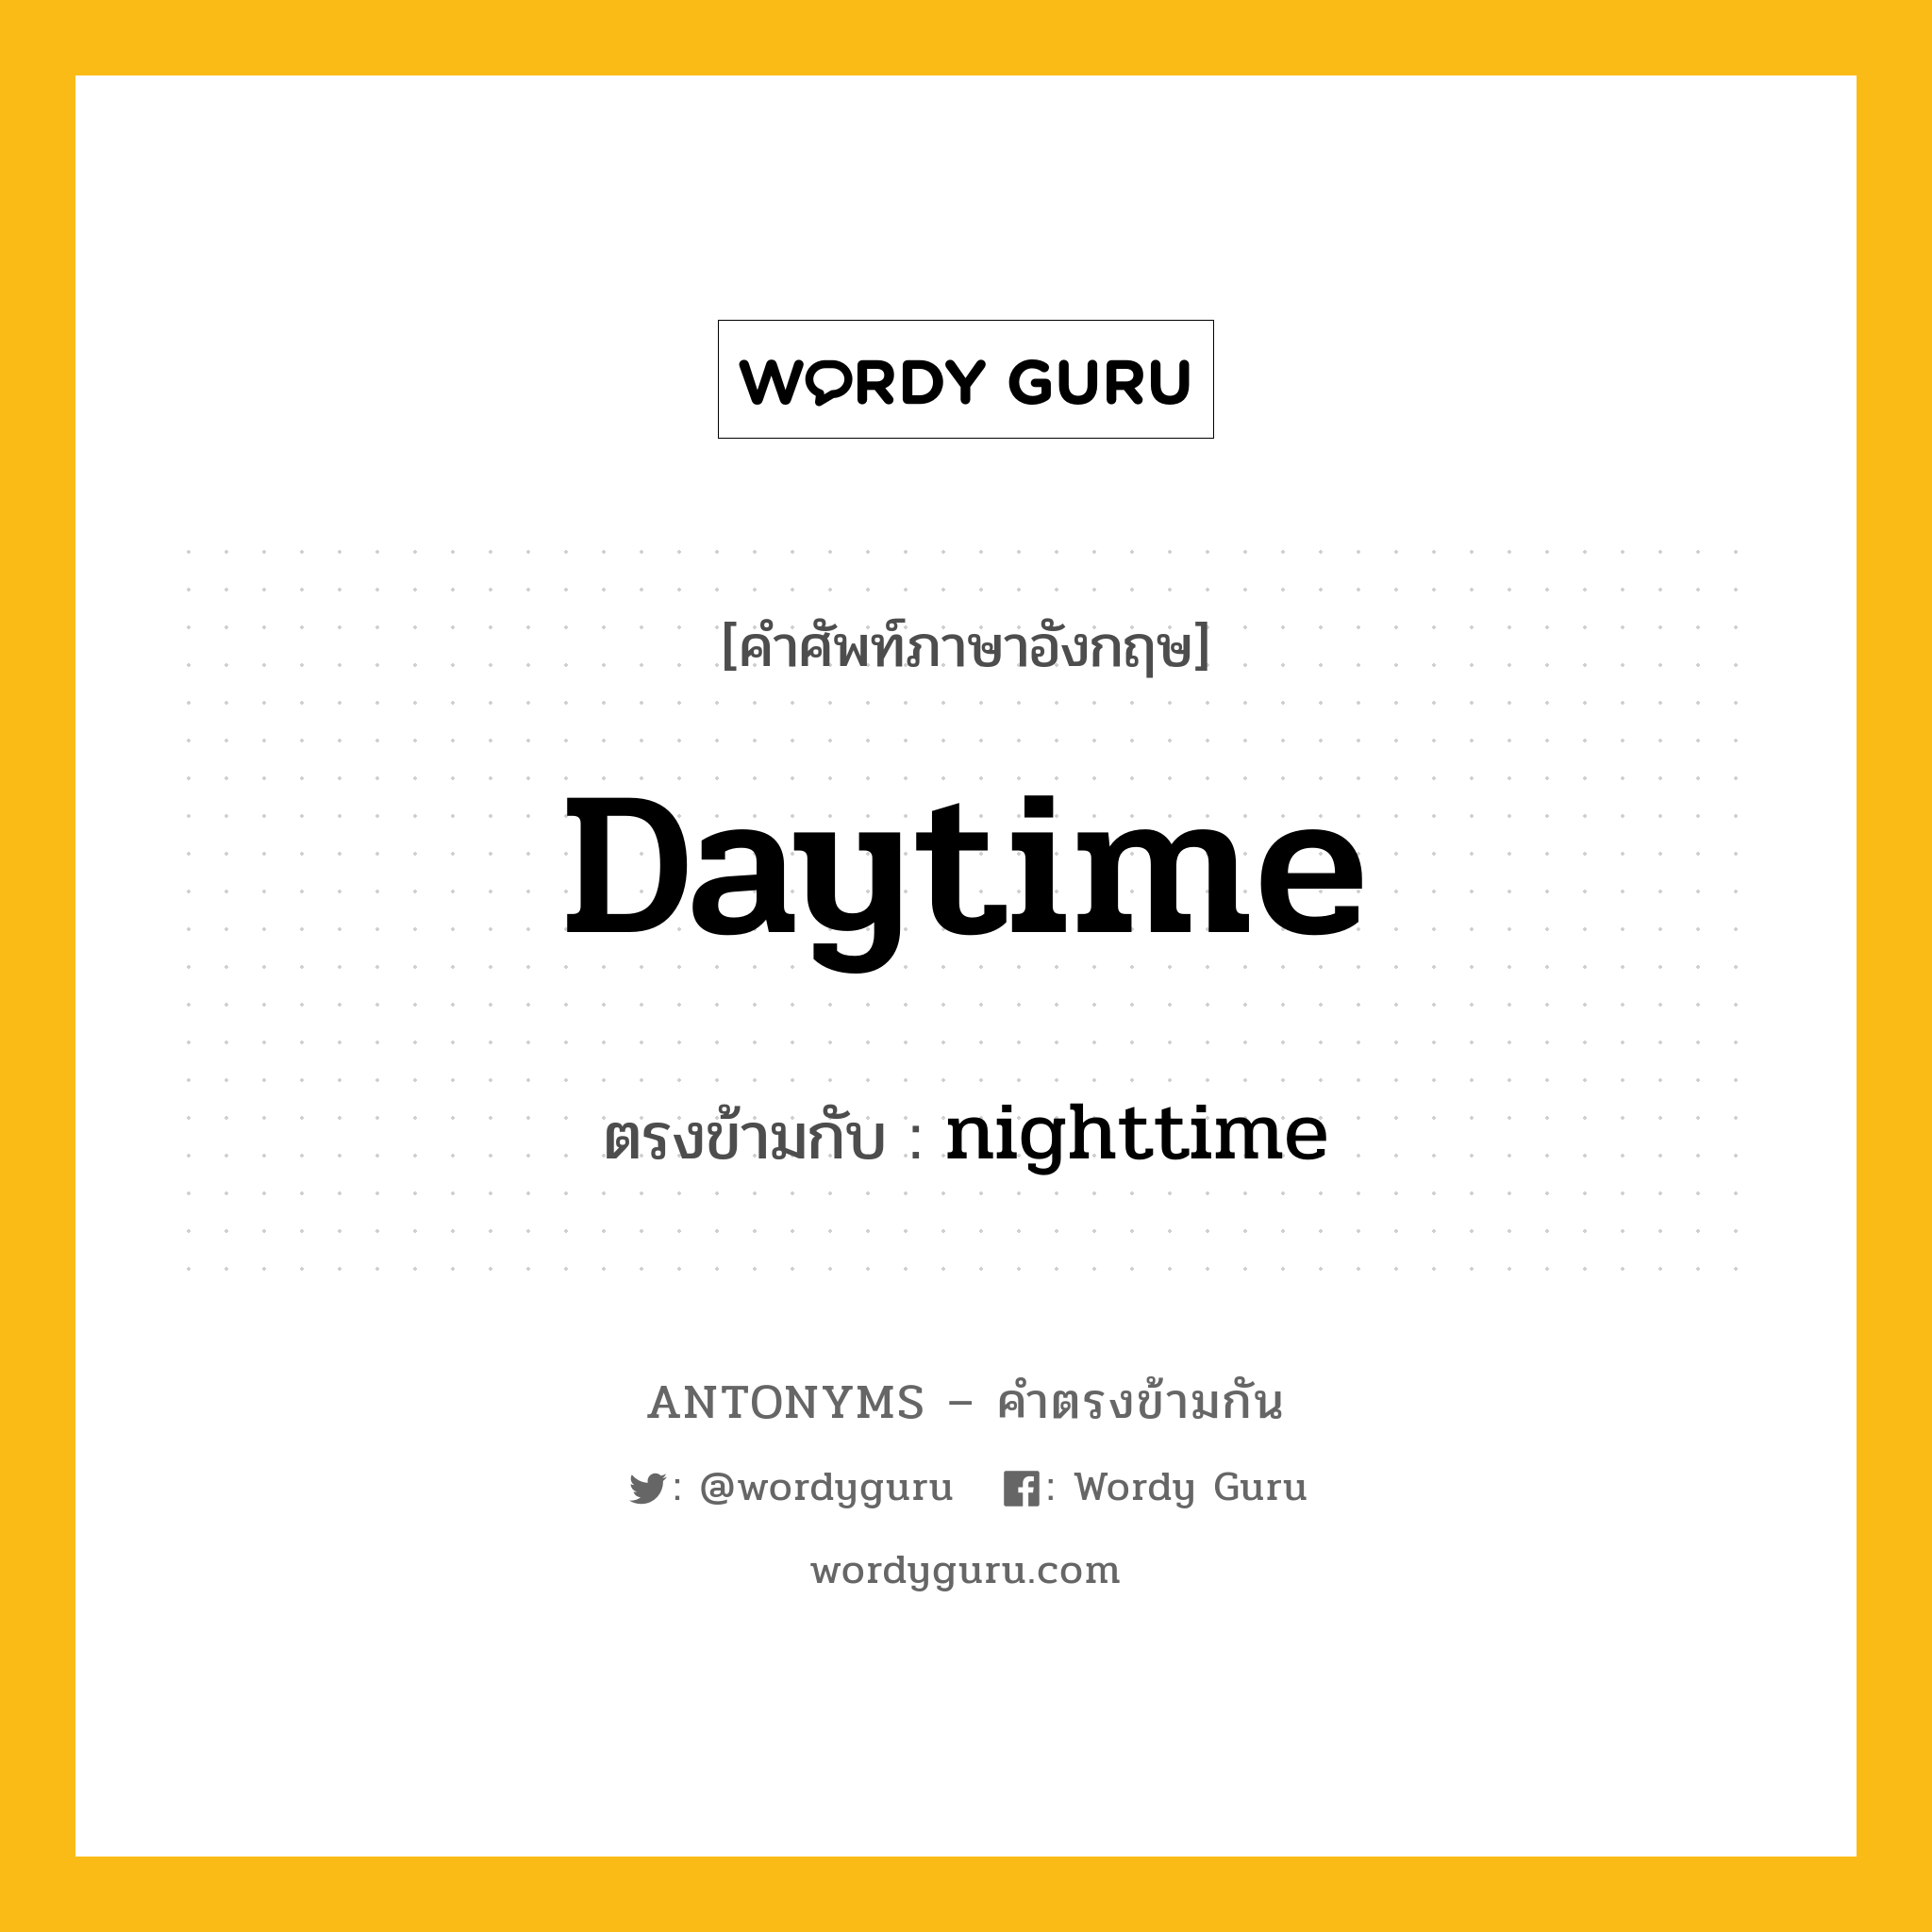 daytime เป็นคำตรงข้ามกับคำไหนบ้าง?, คำศัพท์ภาษาอังกฤษ daytime ตรงข้ามกับ nighttime หมวด nighttime